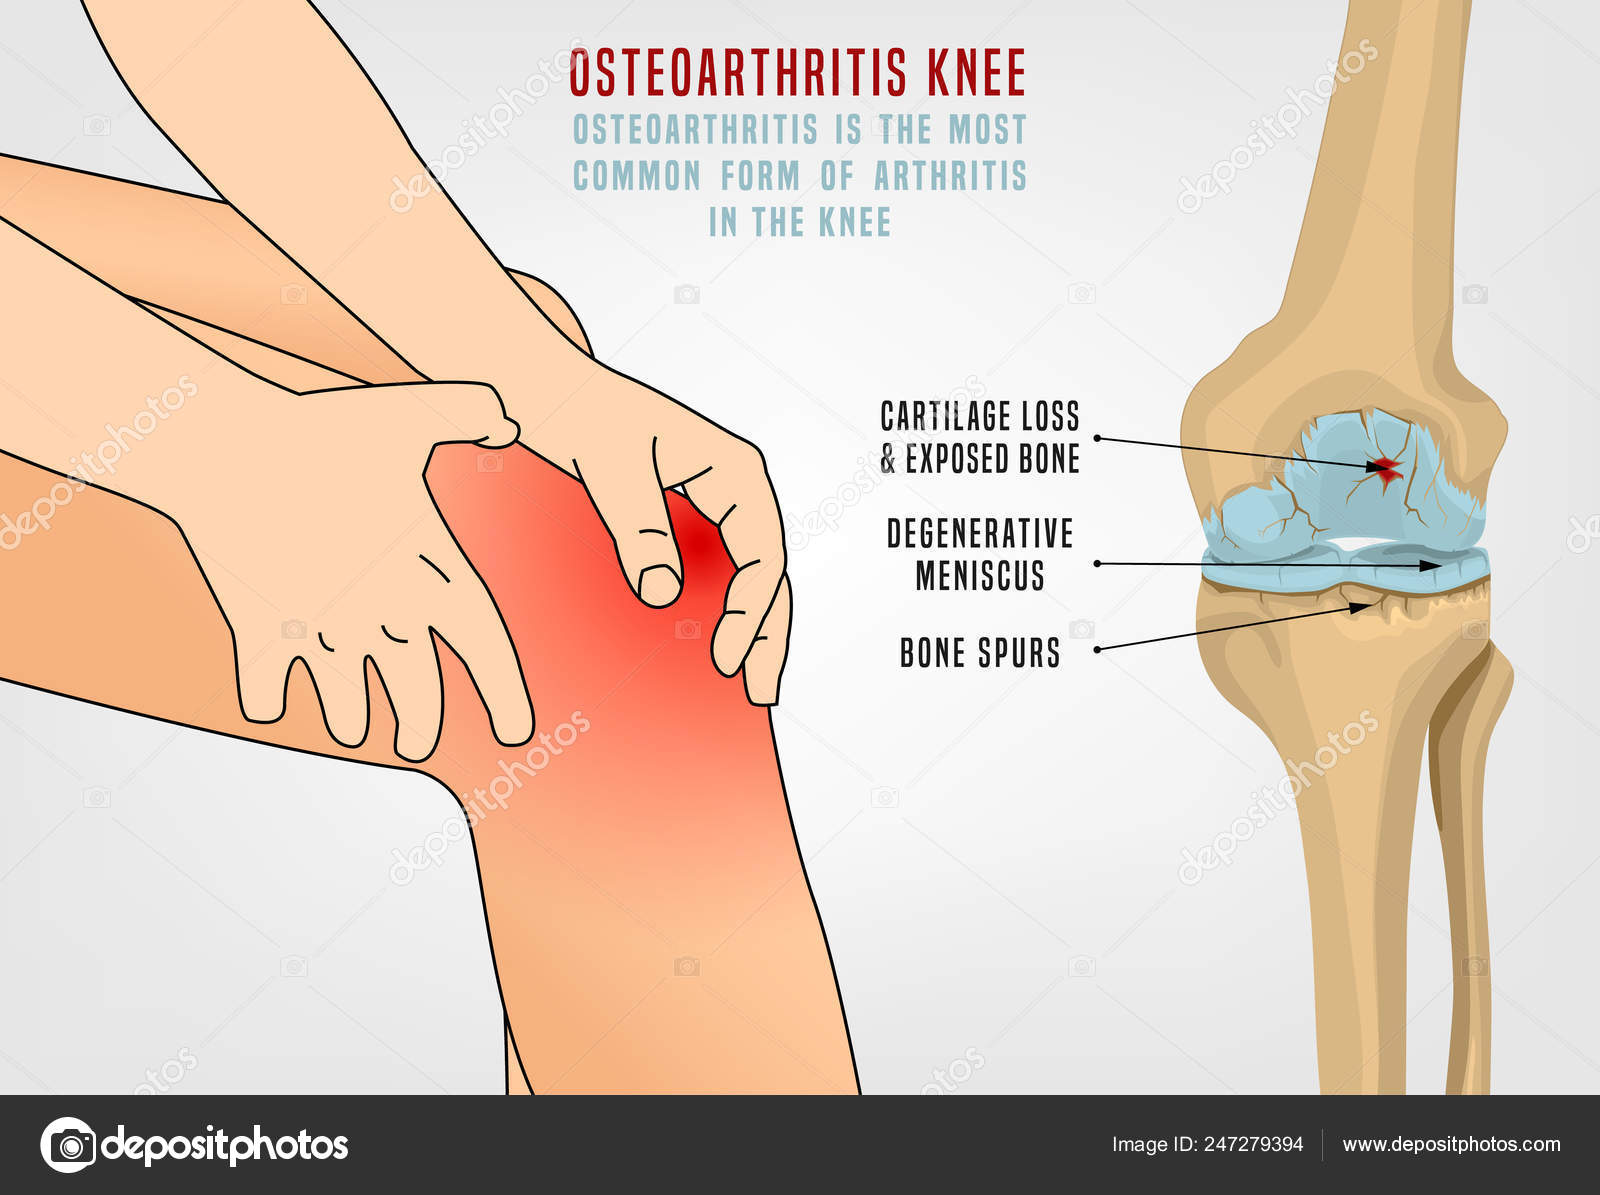 6 szokatlan ok, ami az osteoarthritis fájdalmát súlyosbíthatja